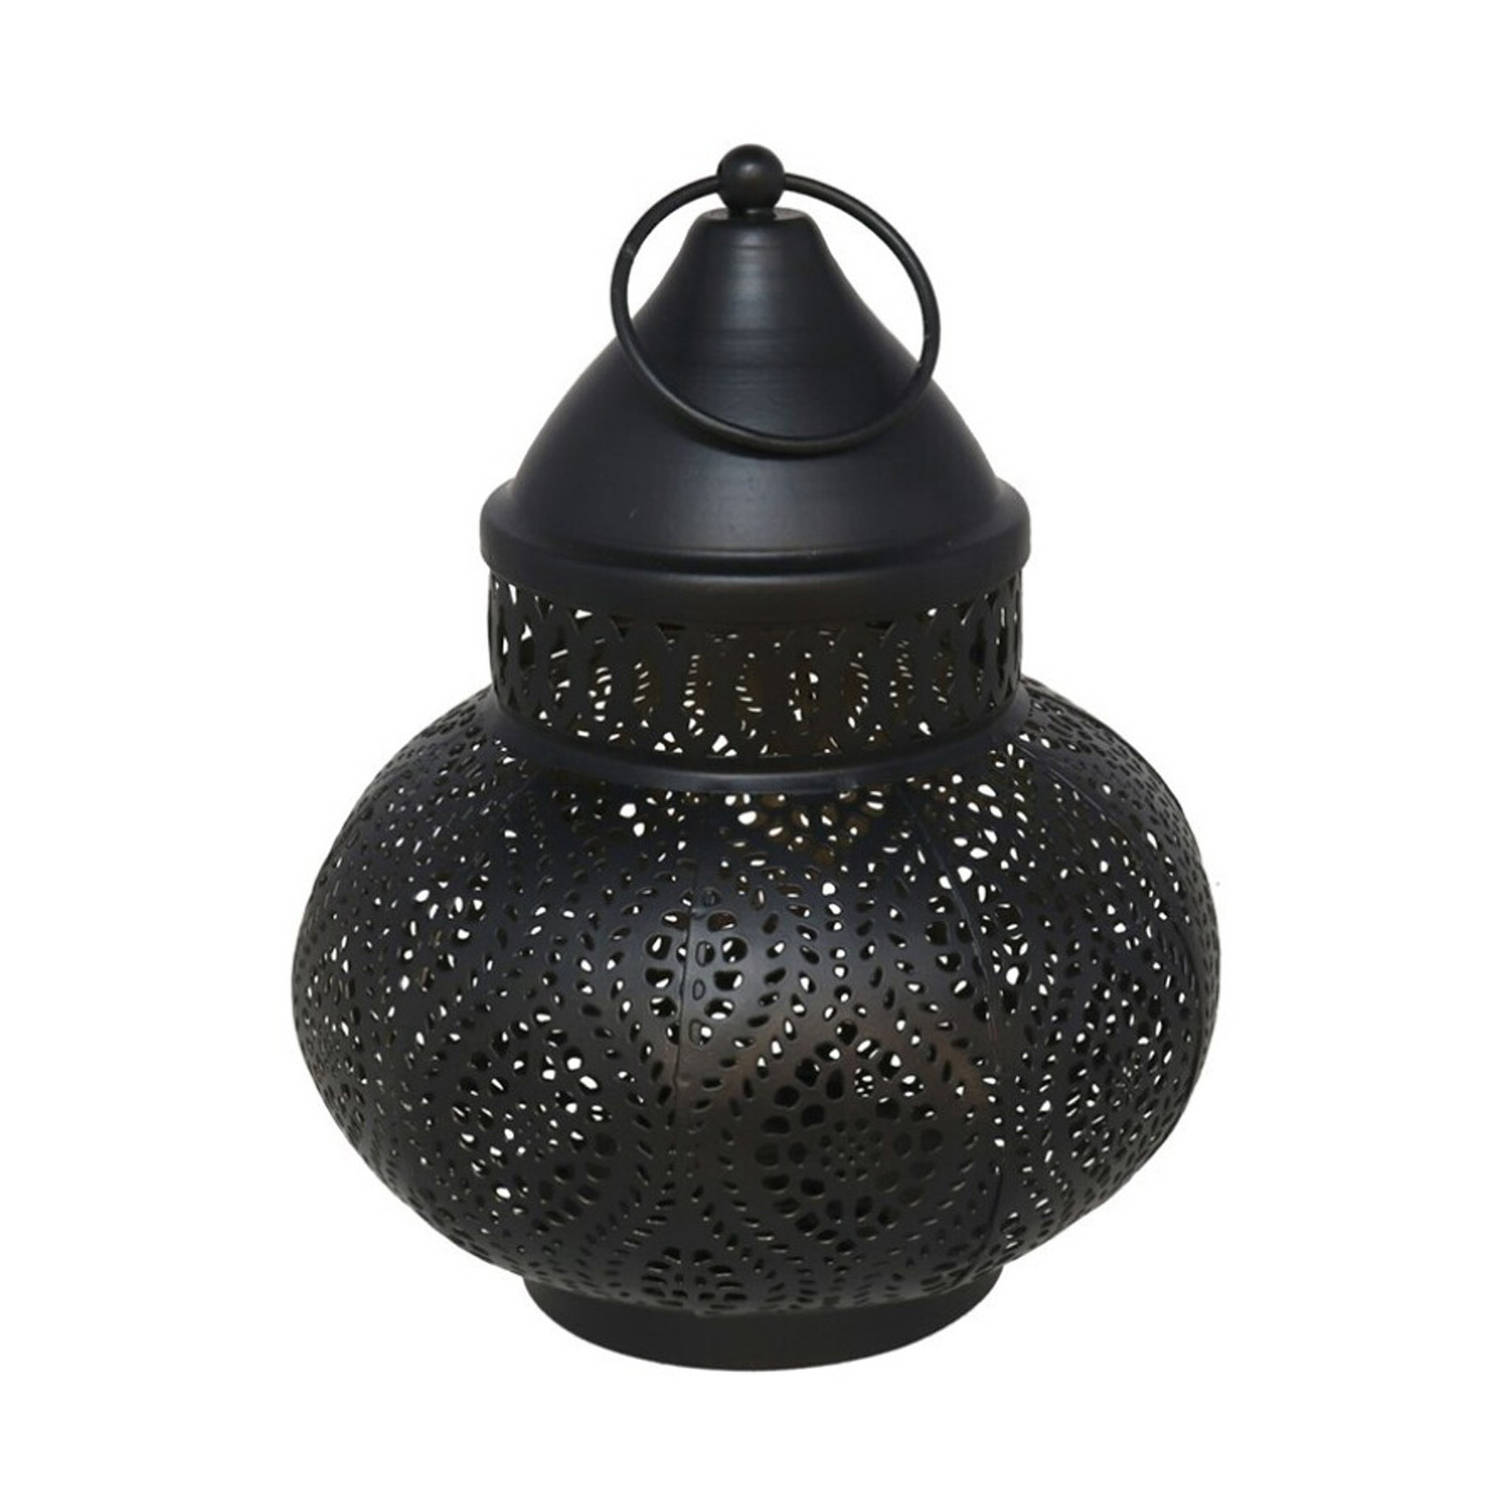 Tuin deco lantaarn - Marokkaanse sfeer stijl - zwart/goud - D15 x H19 cm - metaal - buitenverlichting - buitenverli